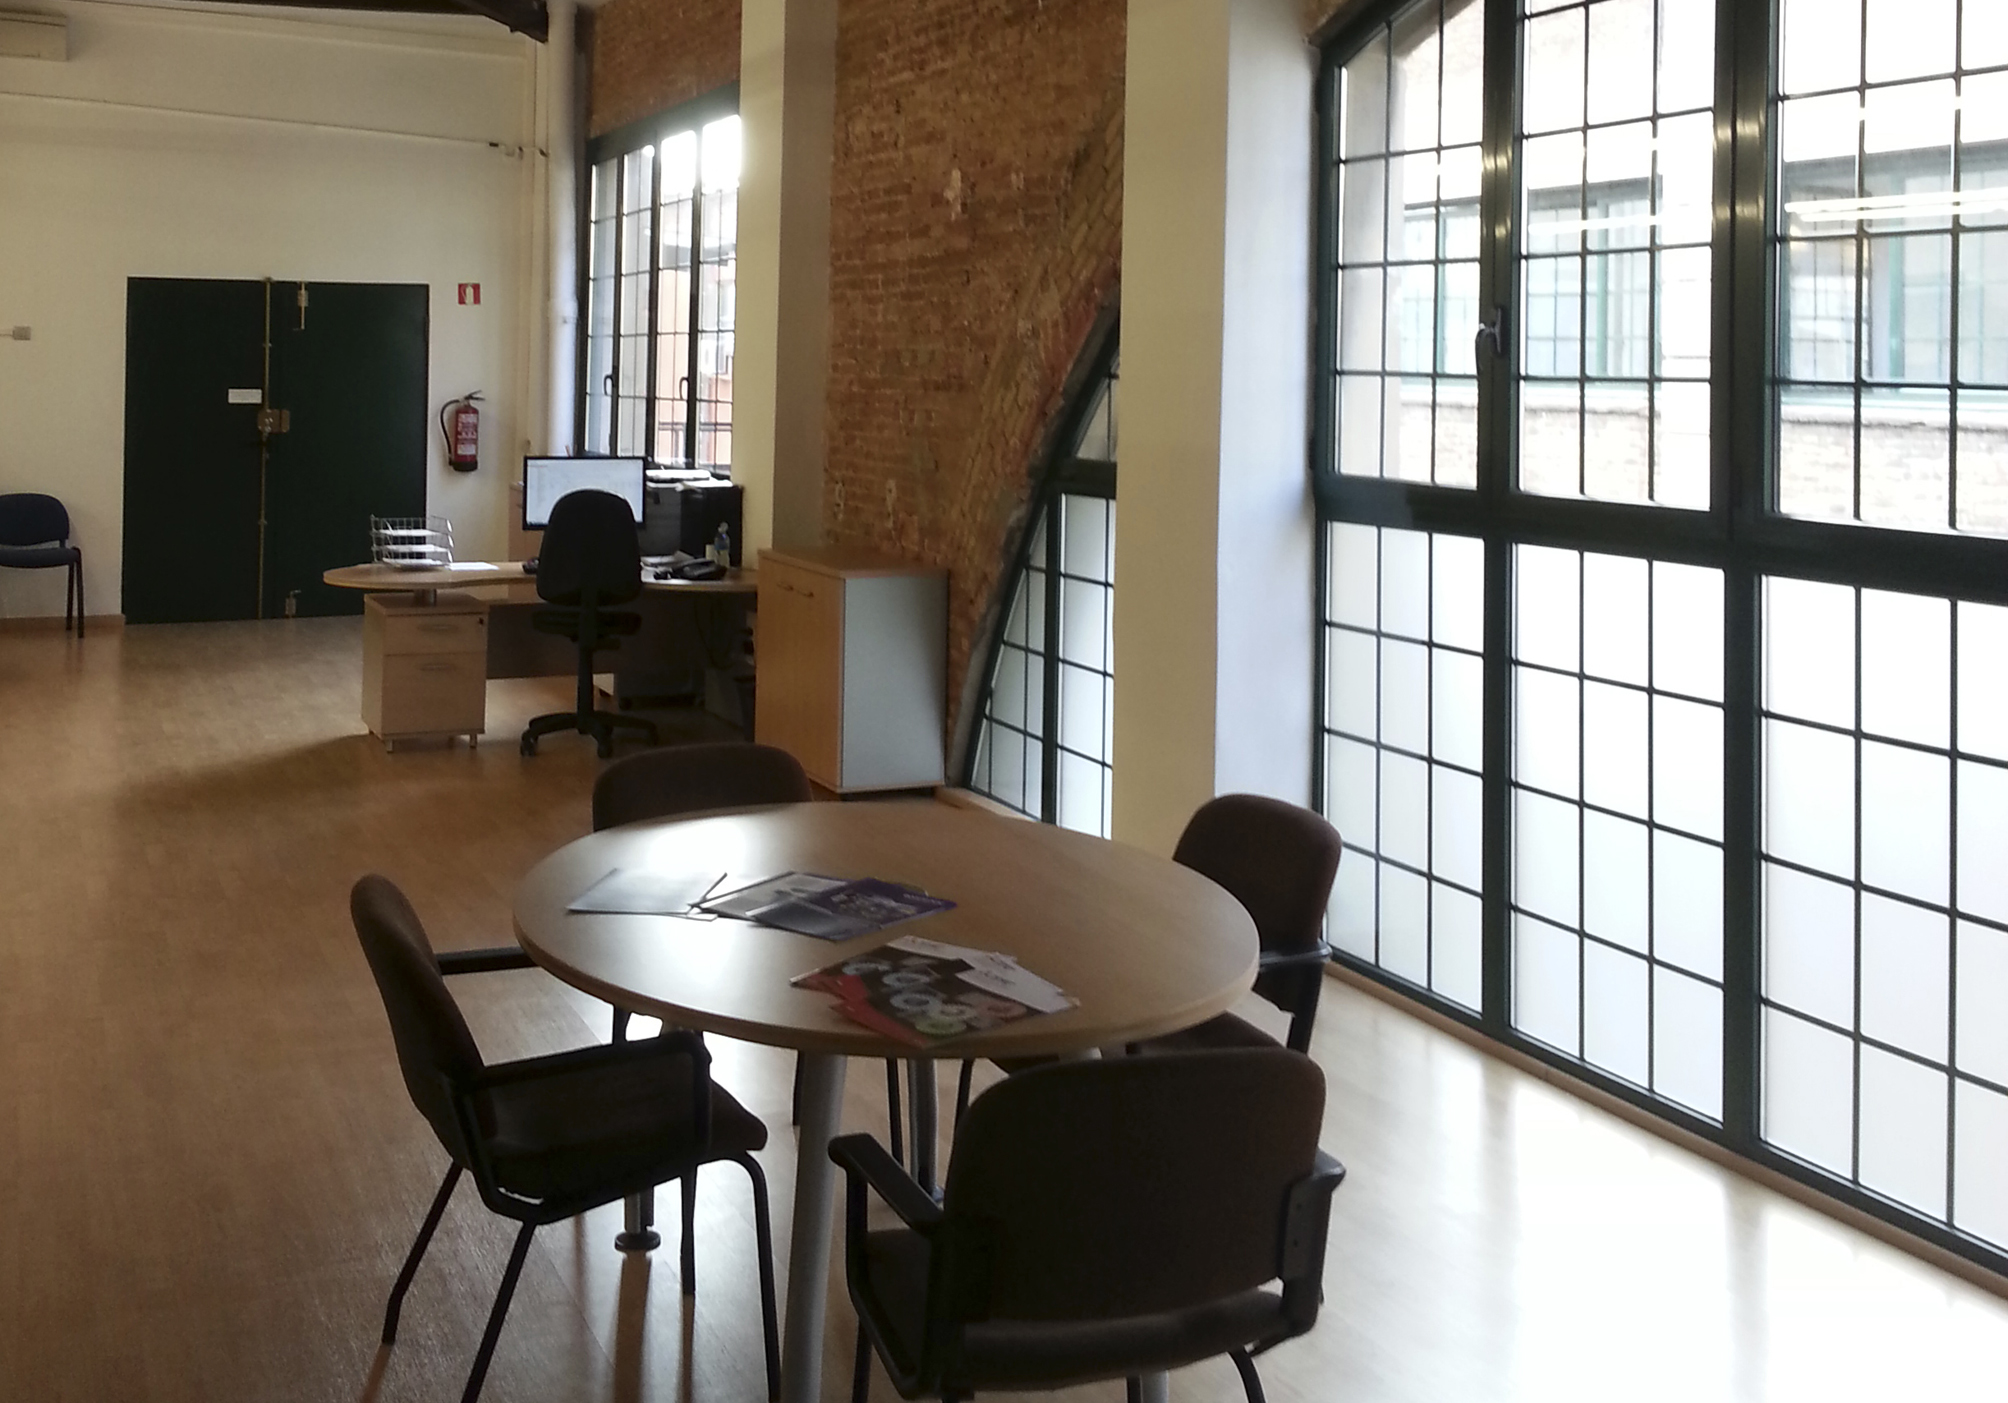 Oficinas centrales de New Control Solutions, situadas dentro del barrio tecnolgico 22@ de Barcelona